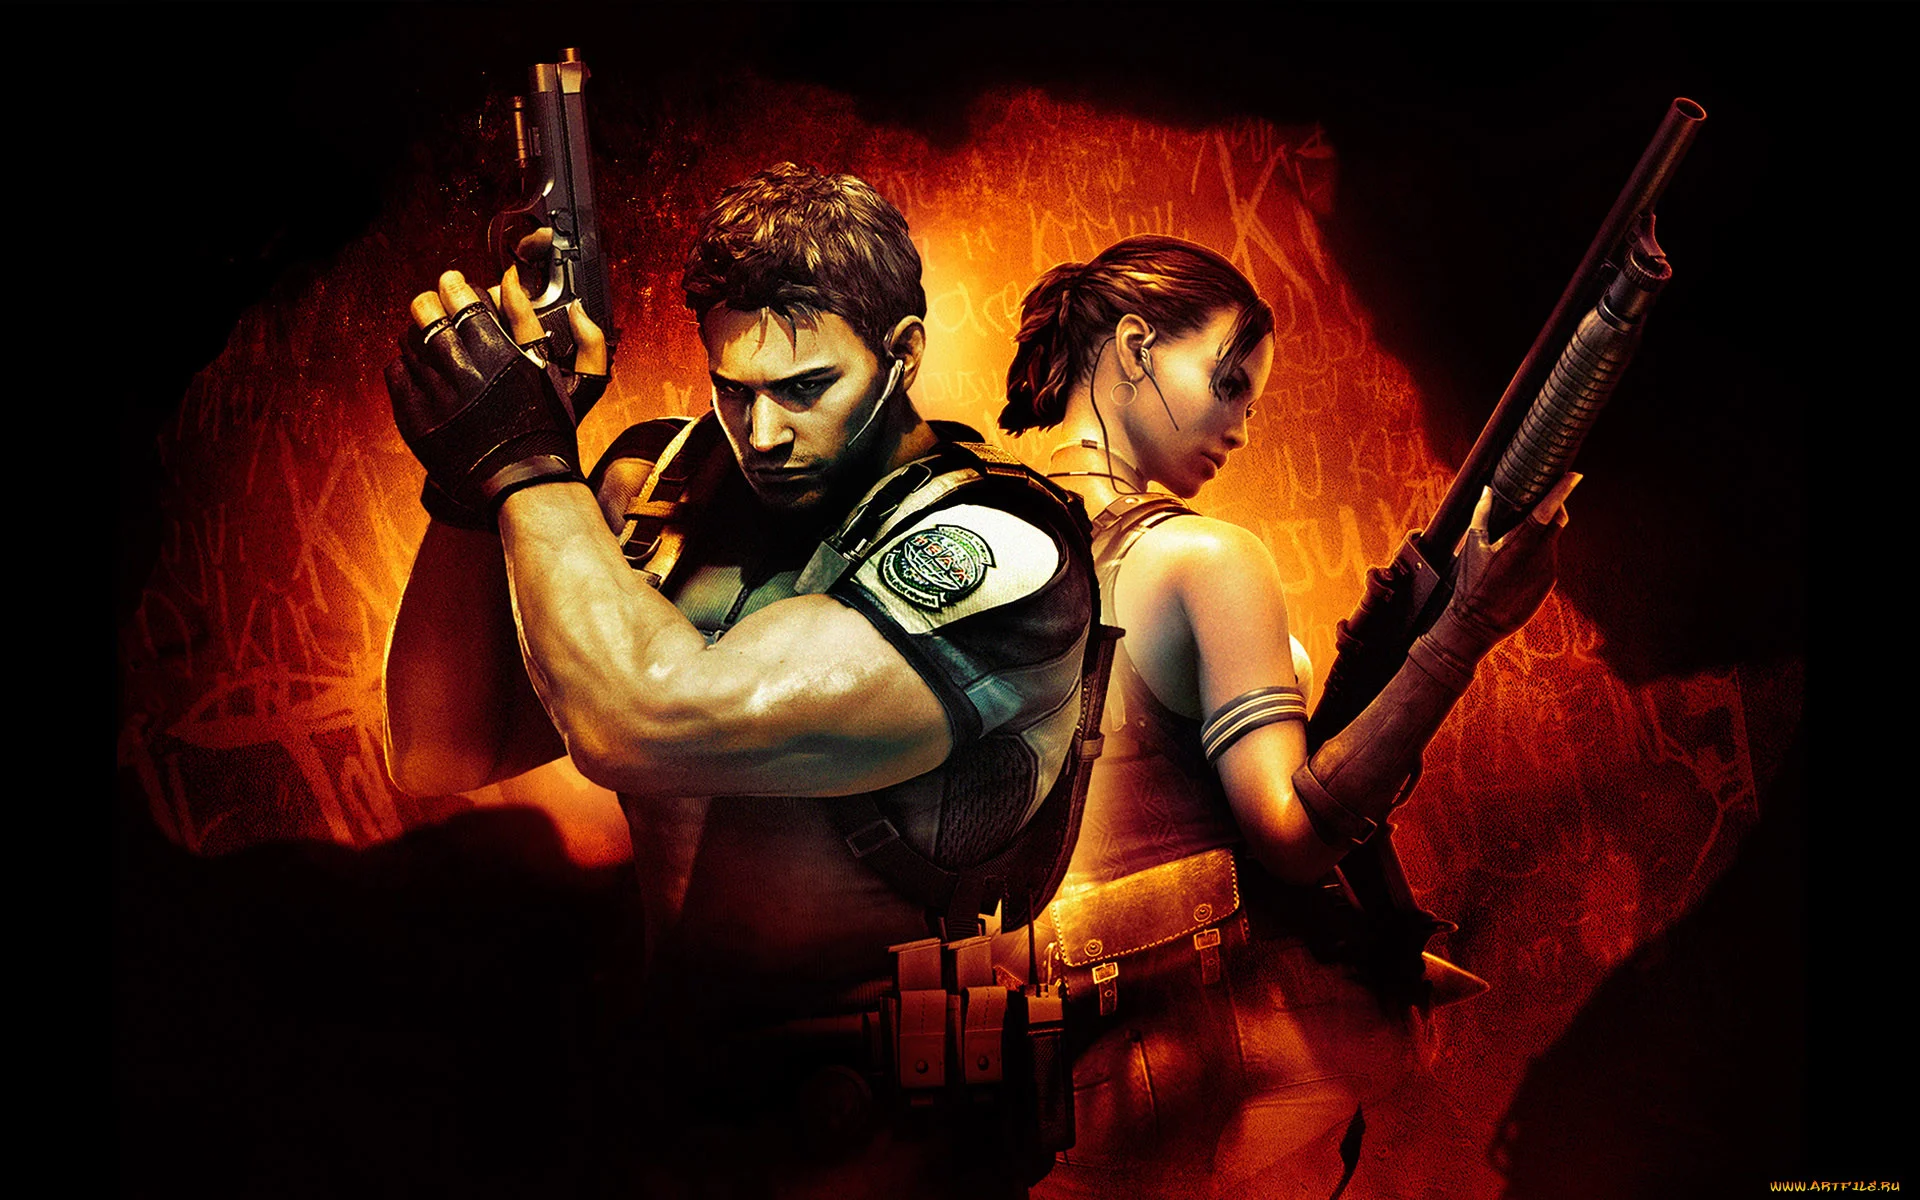 Слухи: анонс ремейка Resident Evil 5 не за горами